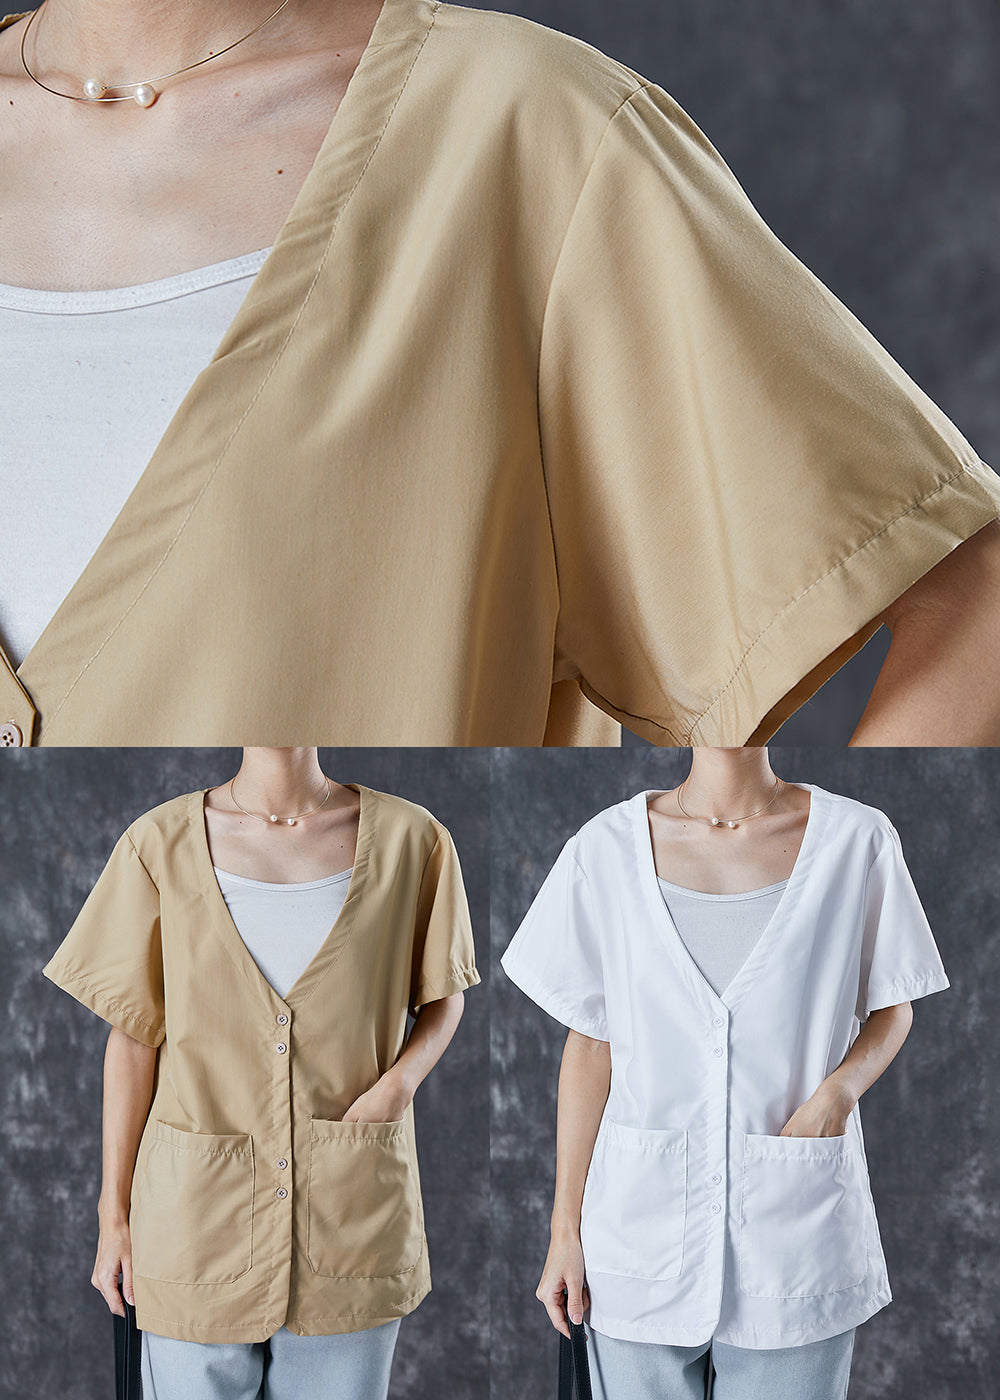 Chic Khaki V Neck Pockets Cotton Shirt Tops Summer